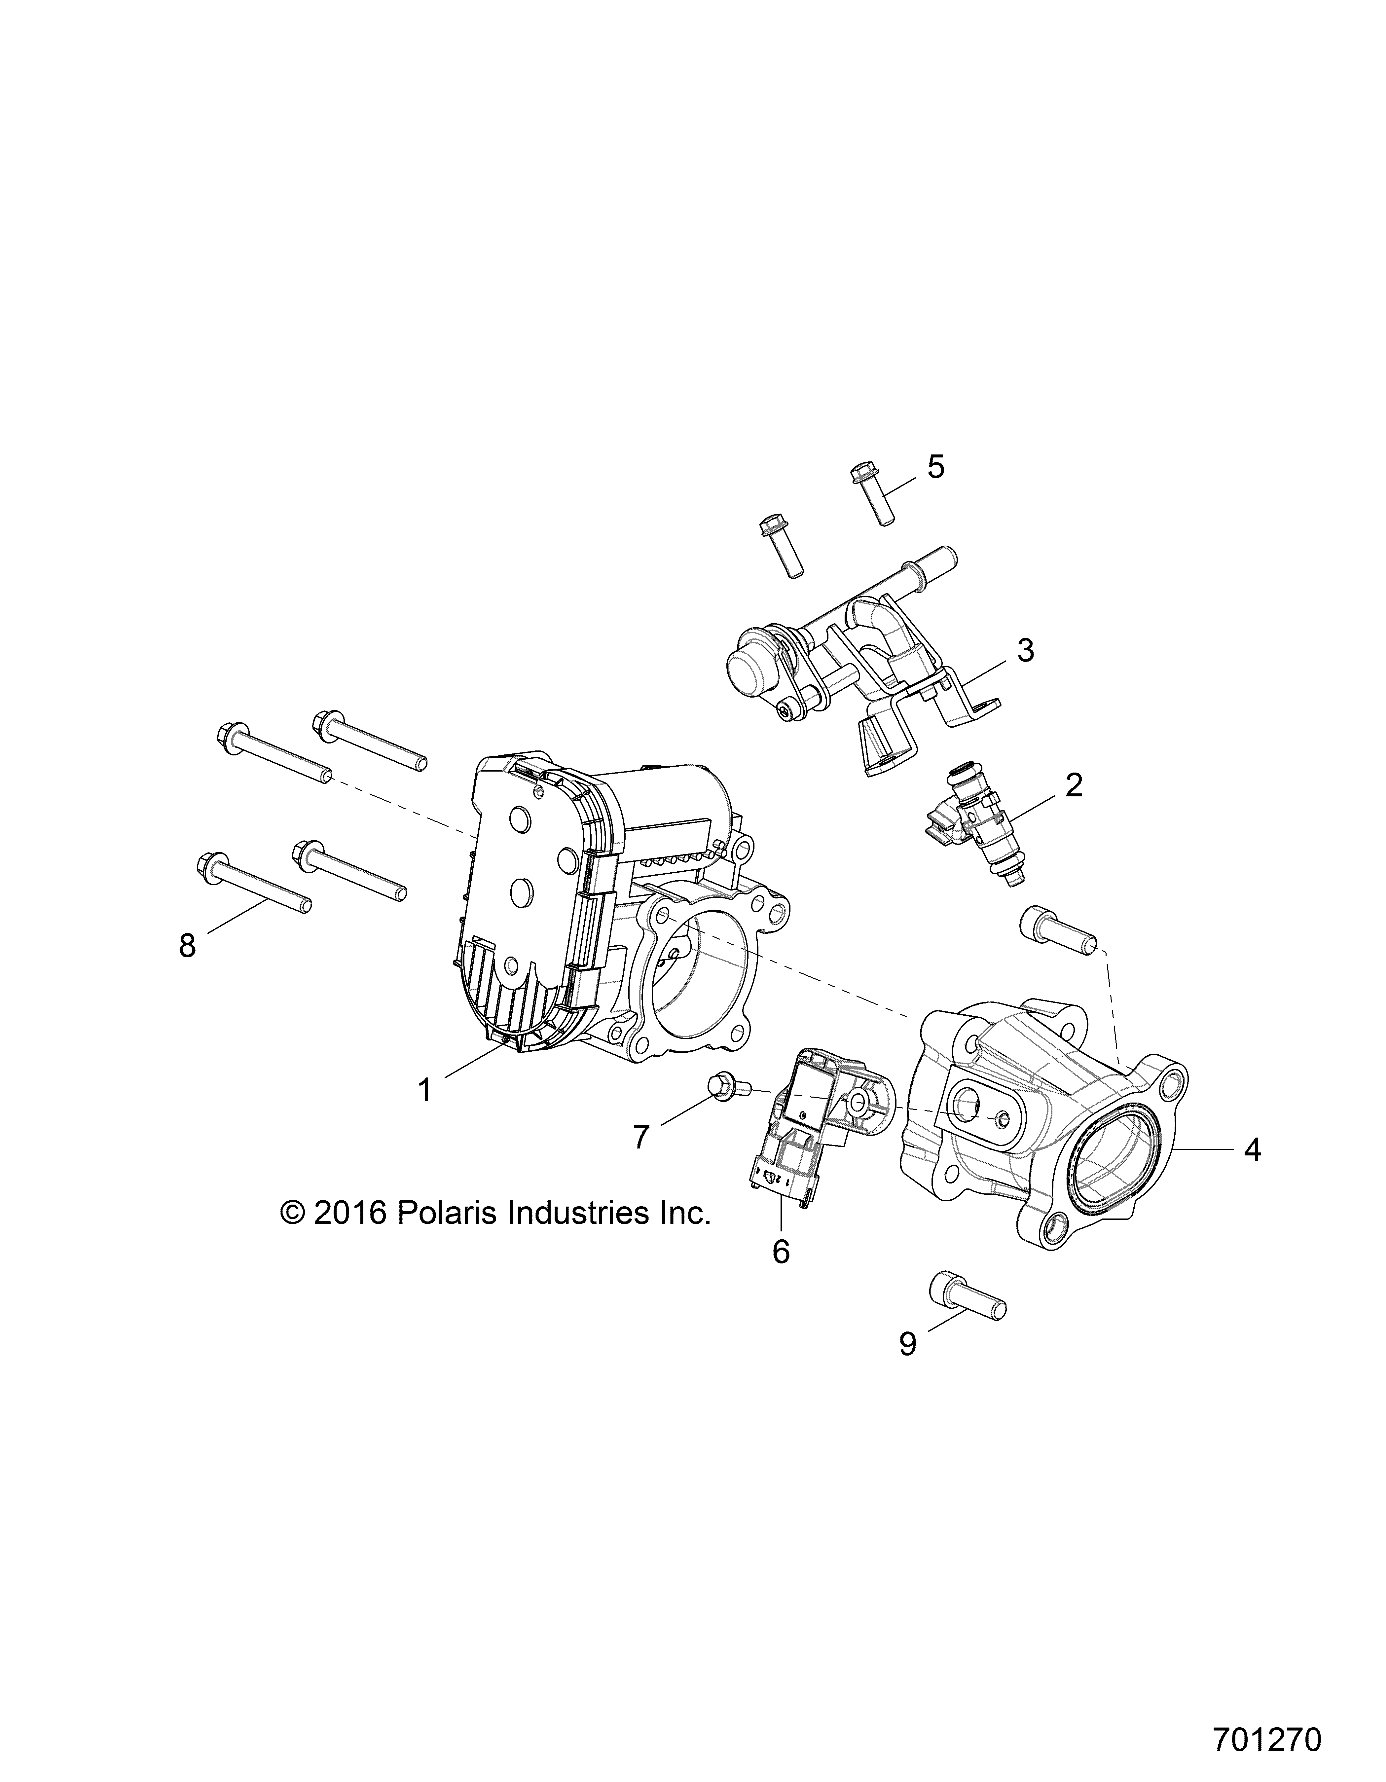 ENGINE, THROTTLE BODY and FUEL RAIL - Z17VJE57AR (701270)